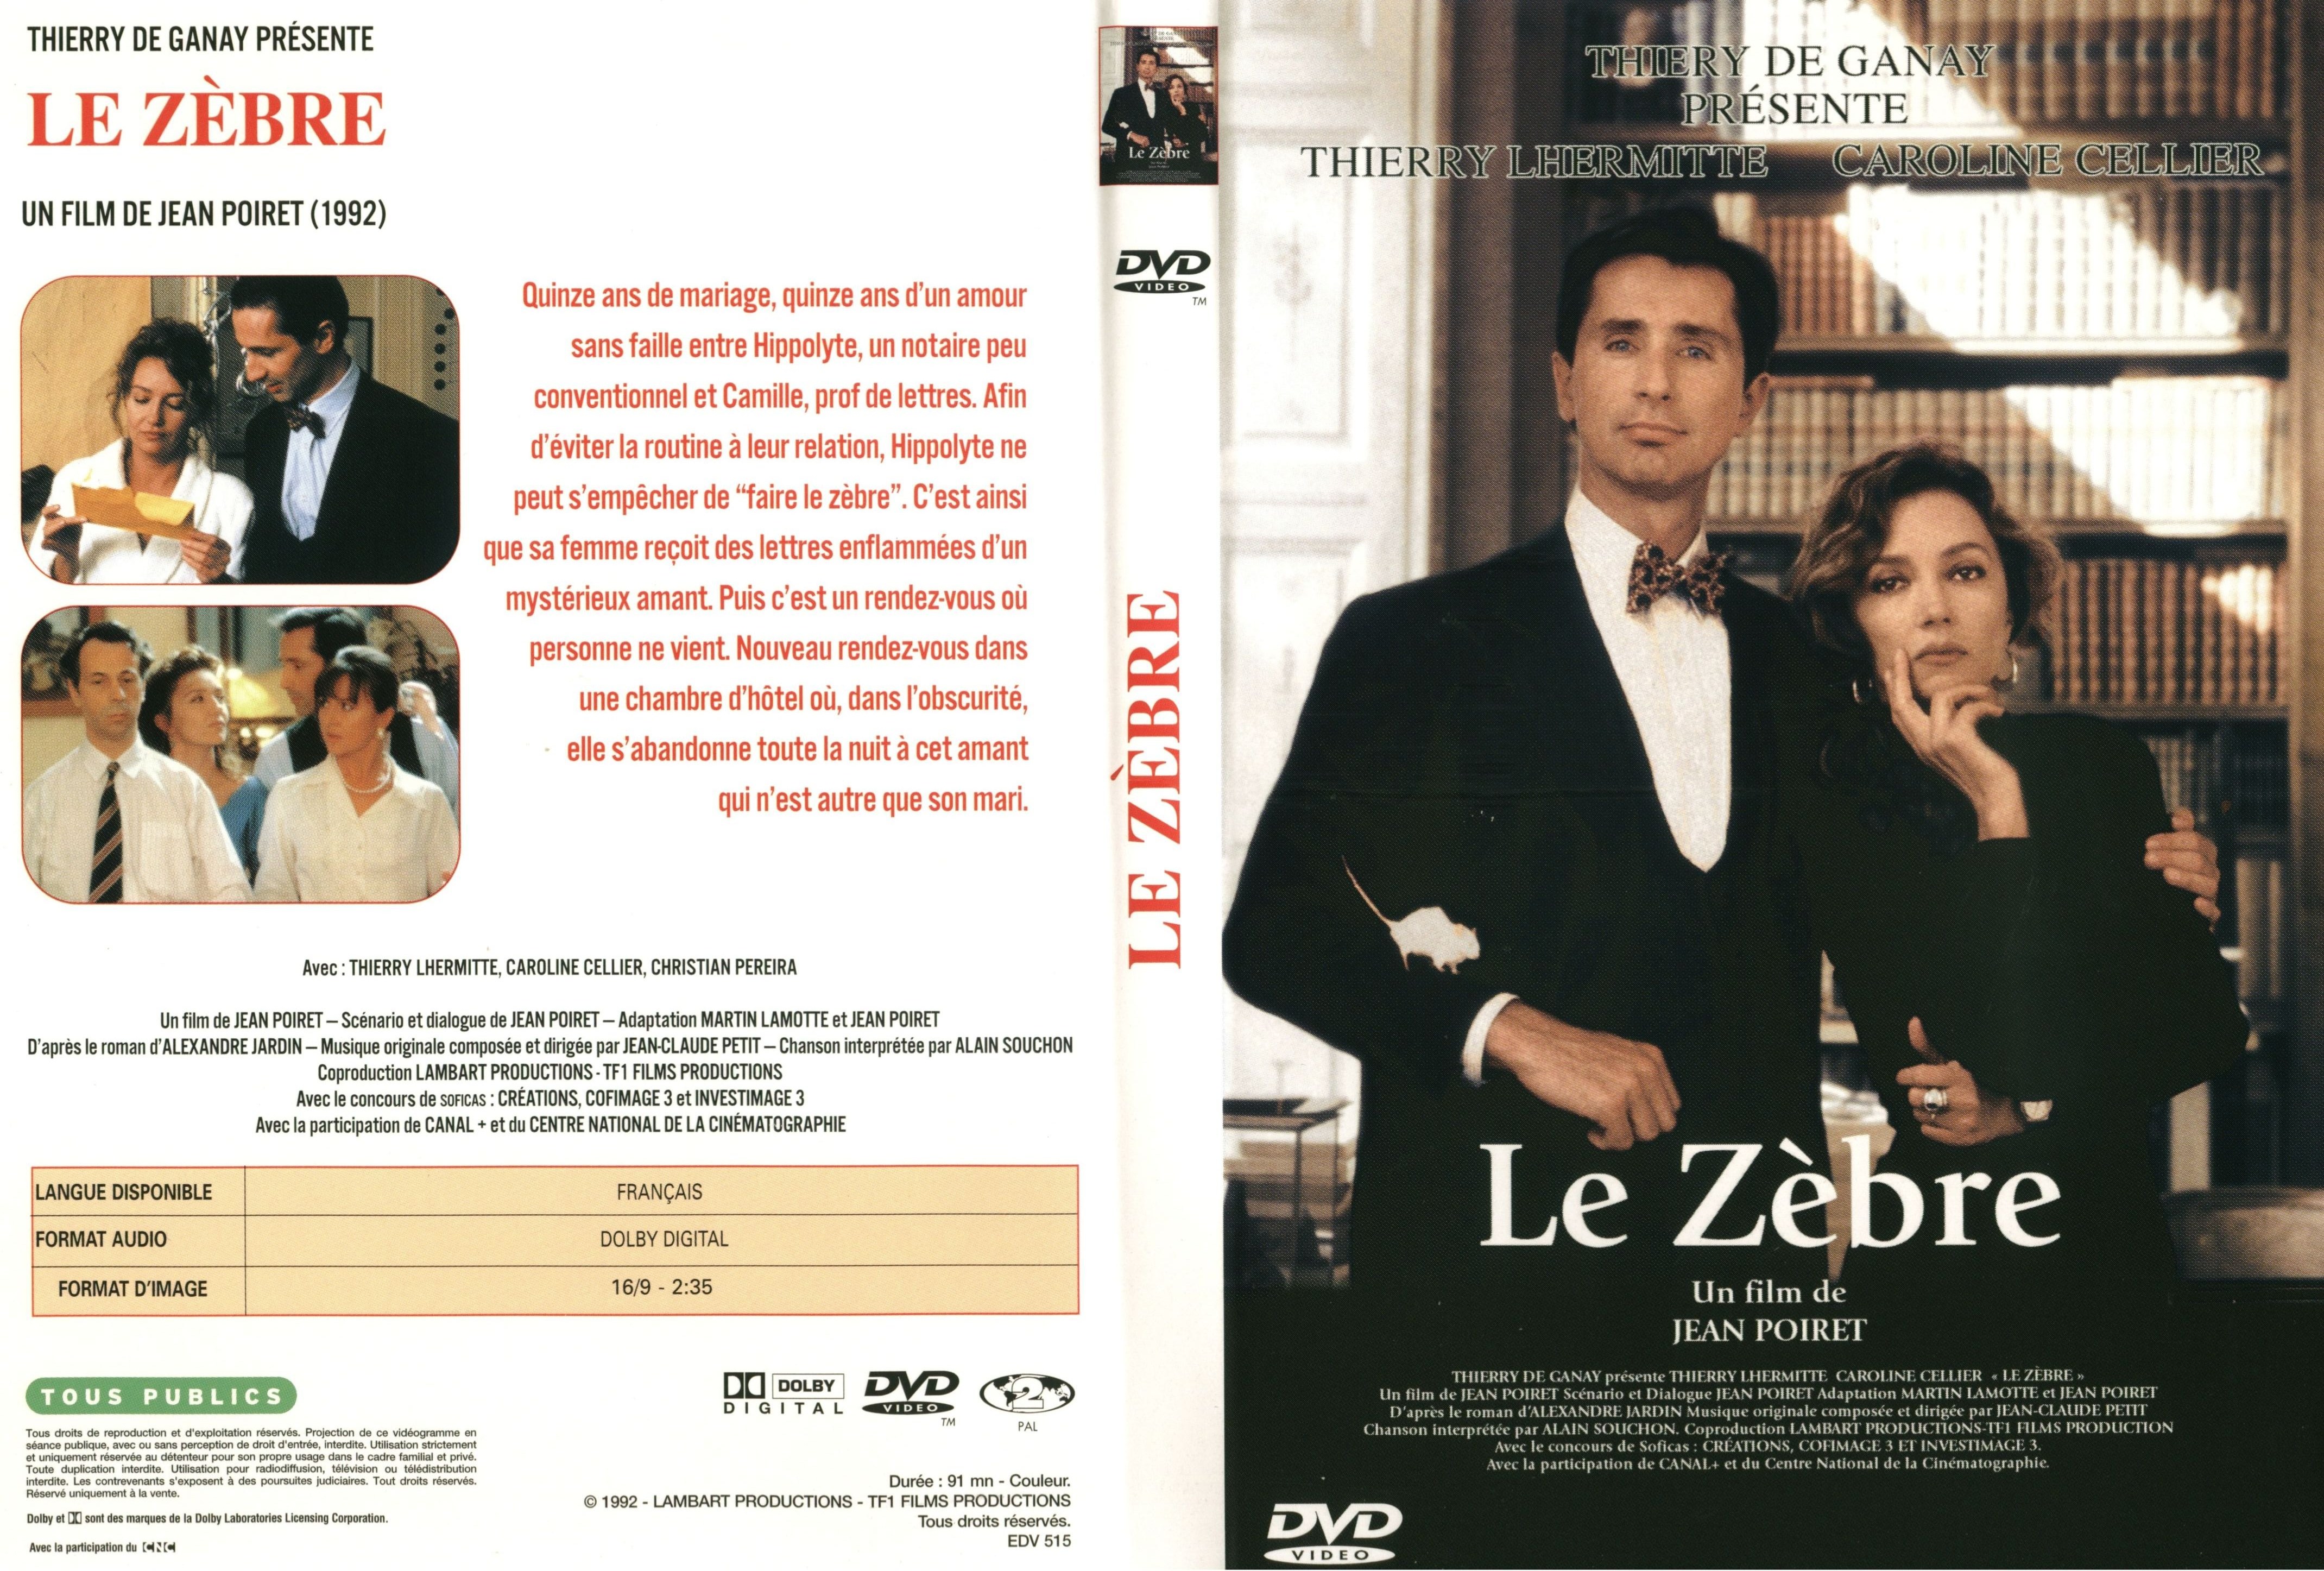 Jaquette DVD Le zebre